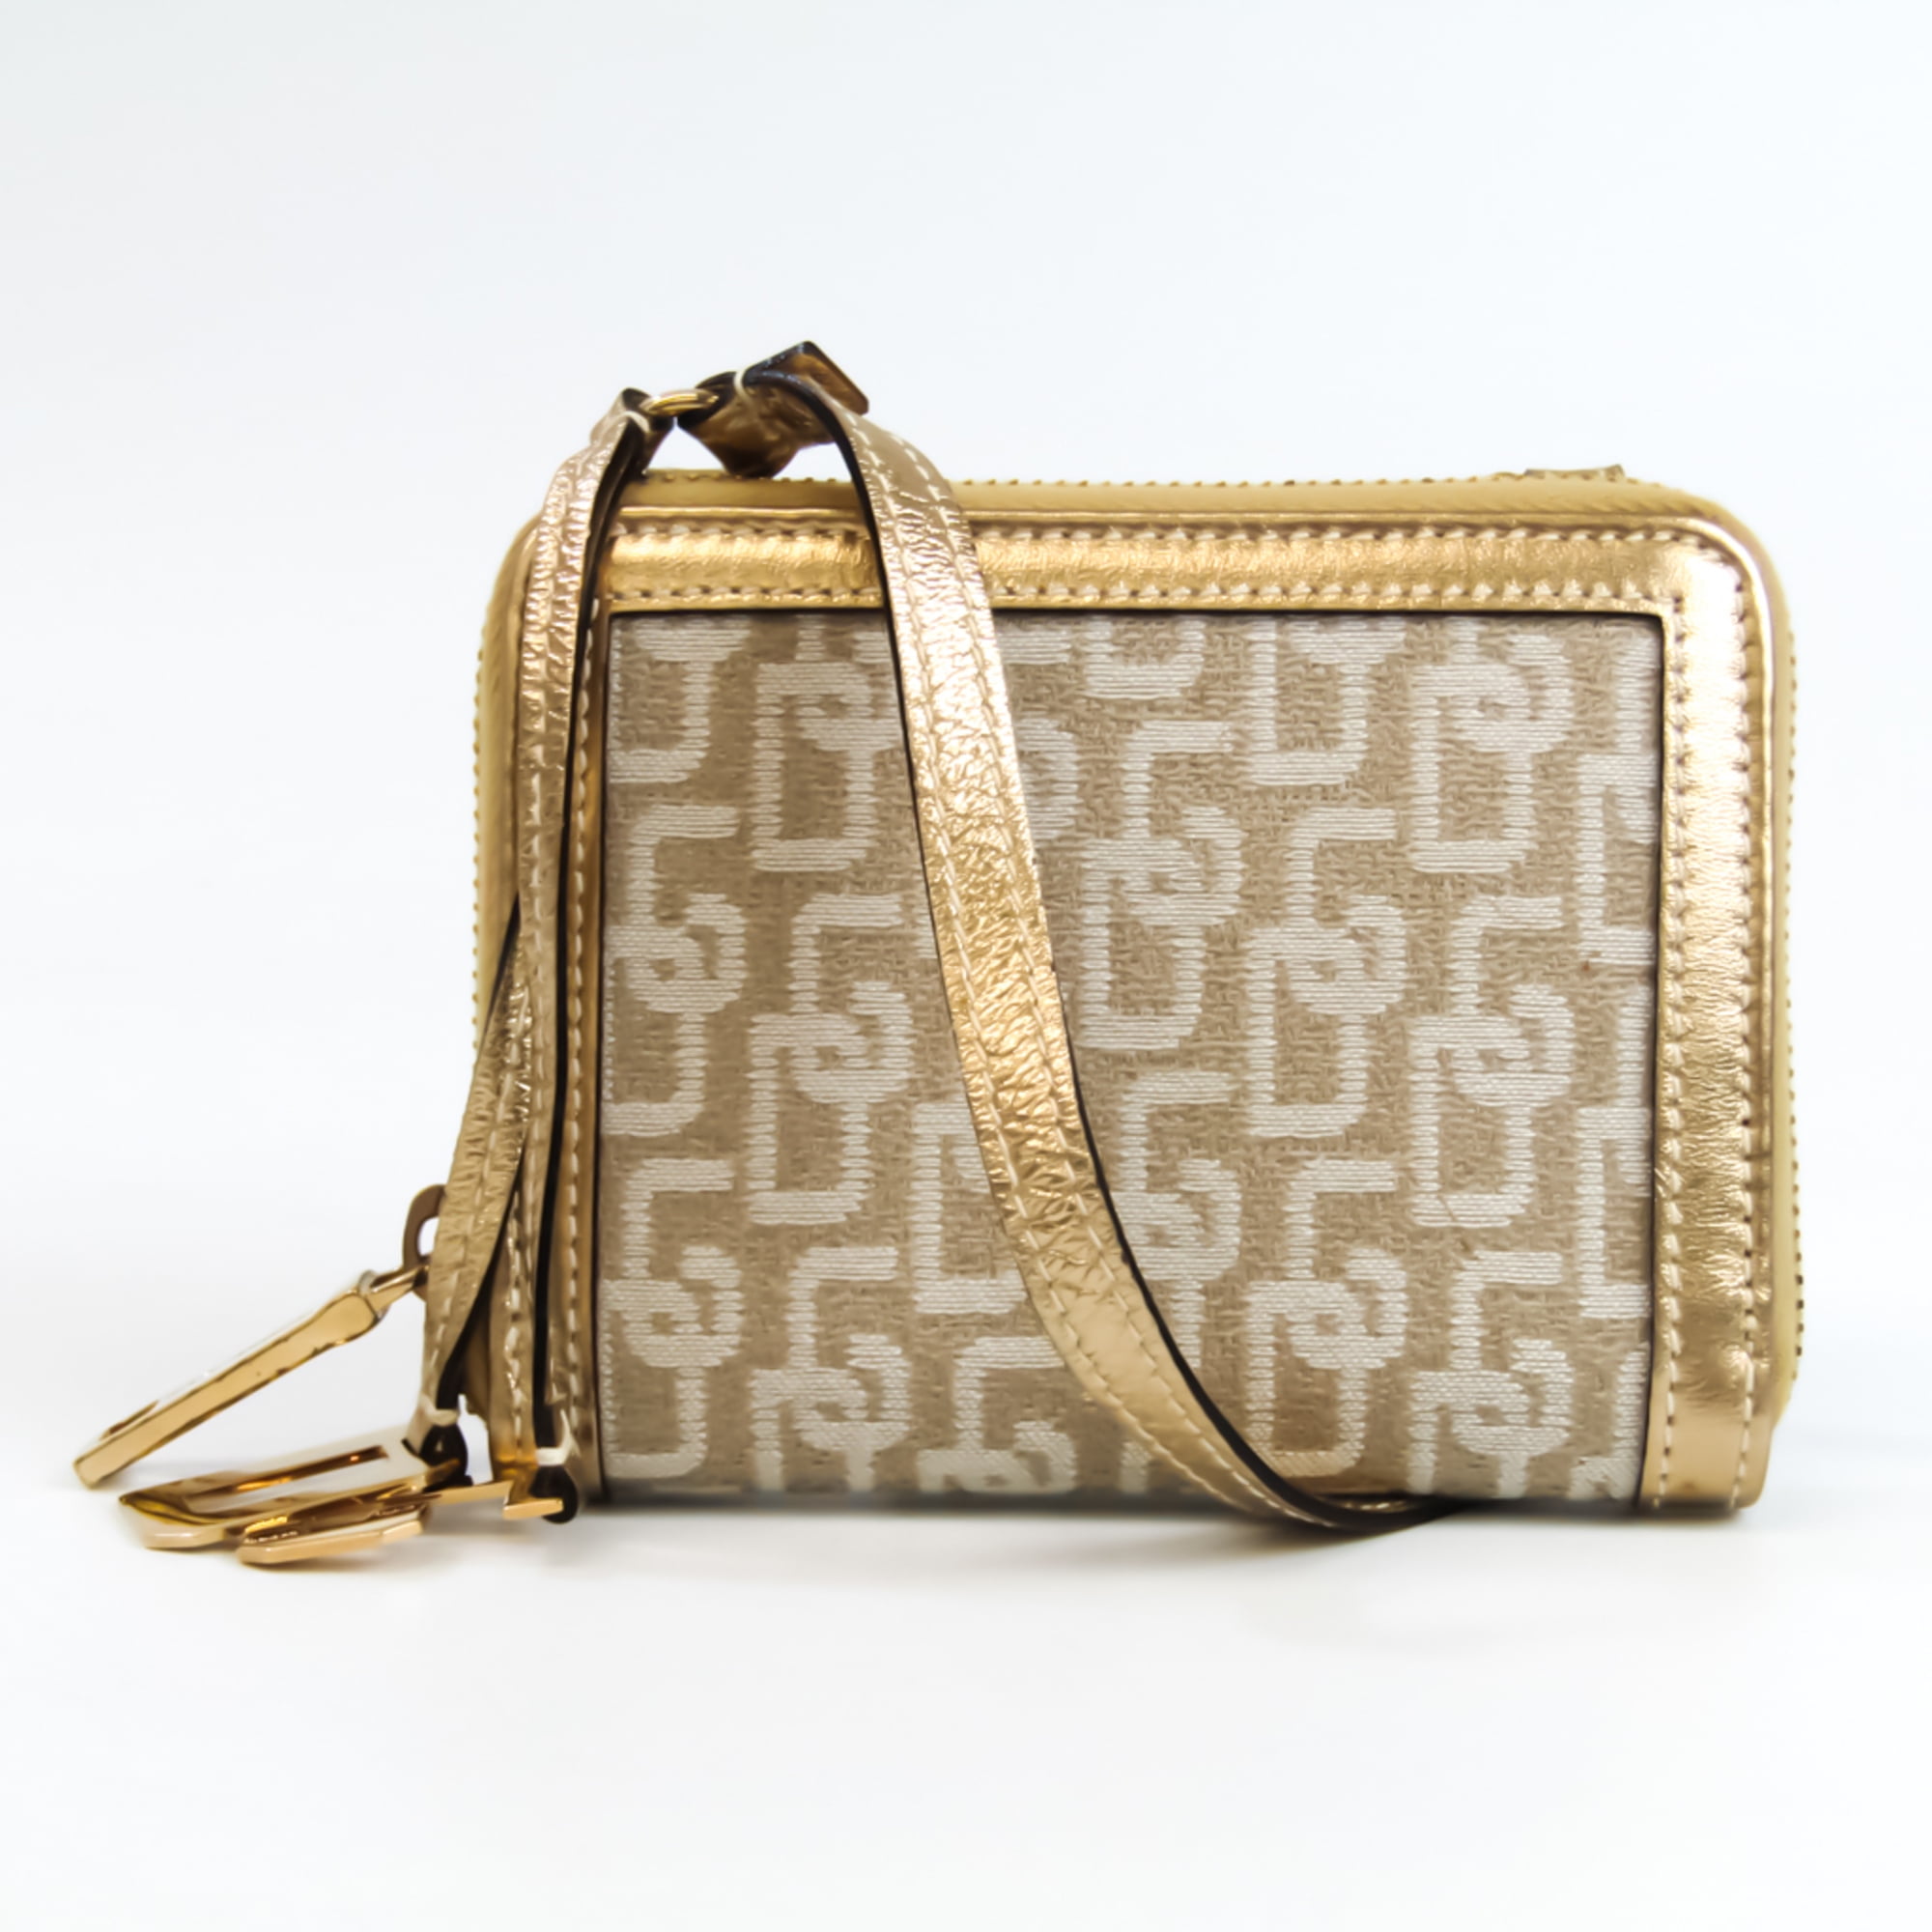 DOLCE & GABBANA Handbag SICILY in gold/ black/ brown